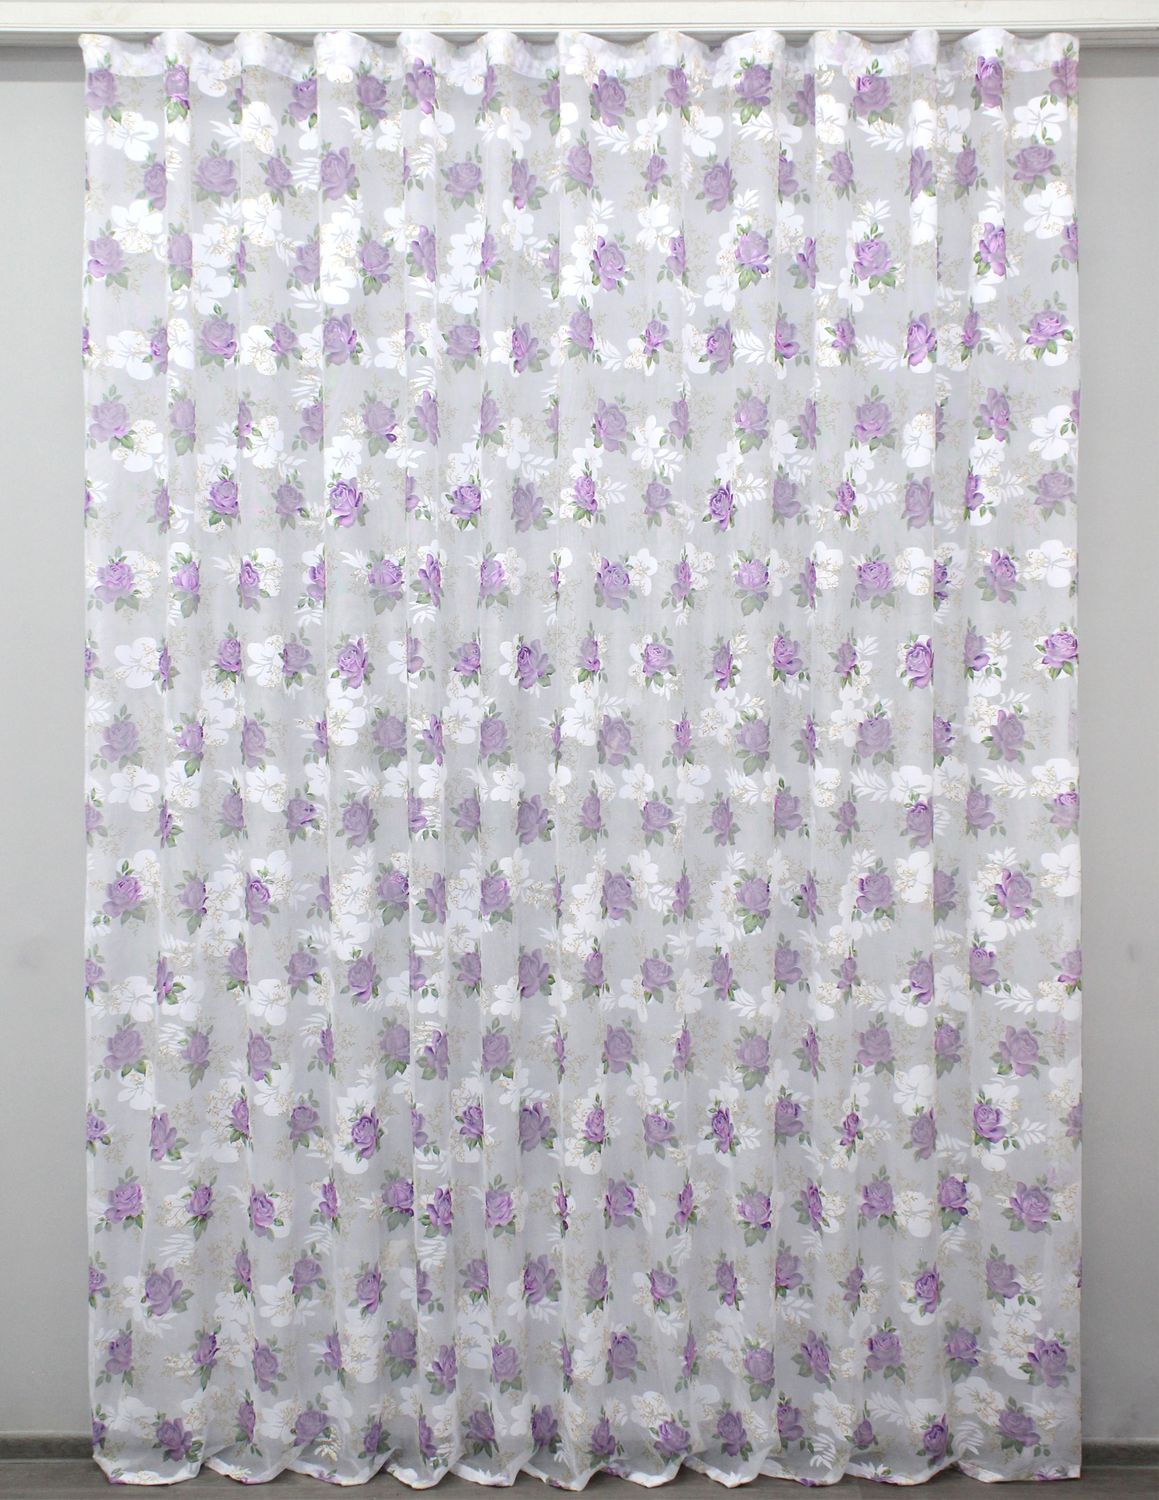 Тюль сетка жаккардовая цвет белый с фиолетовым 1331т, Тюль на метраж, Нужную Вам ширину указывайте при покупке. (Ширина набирается по длине рулона.), 2,7 м.